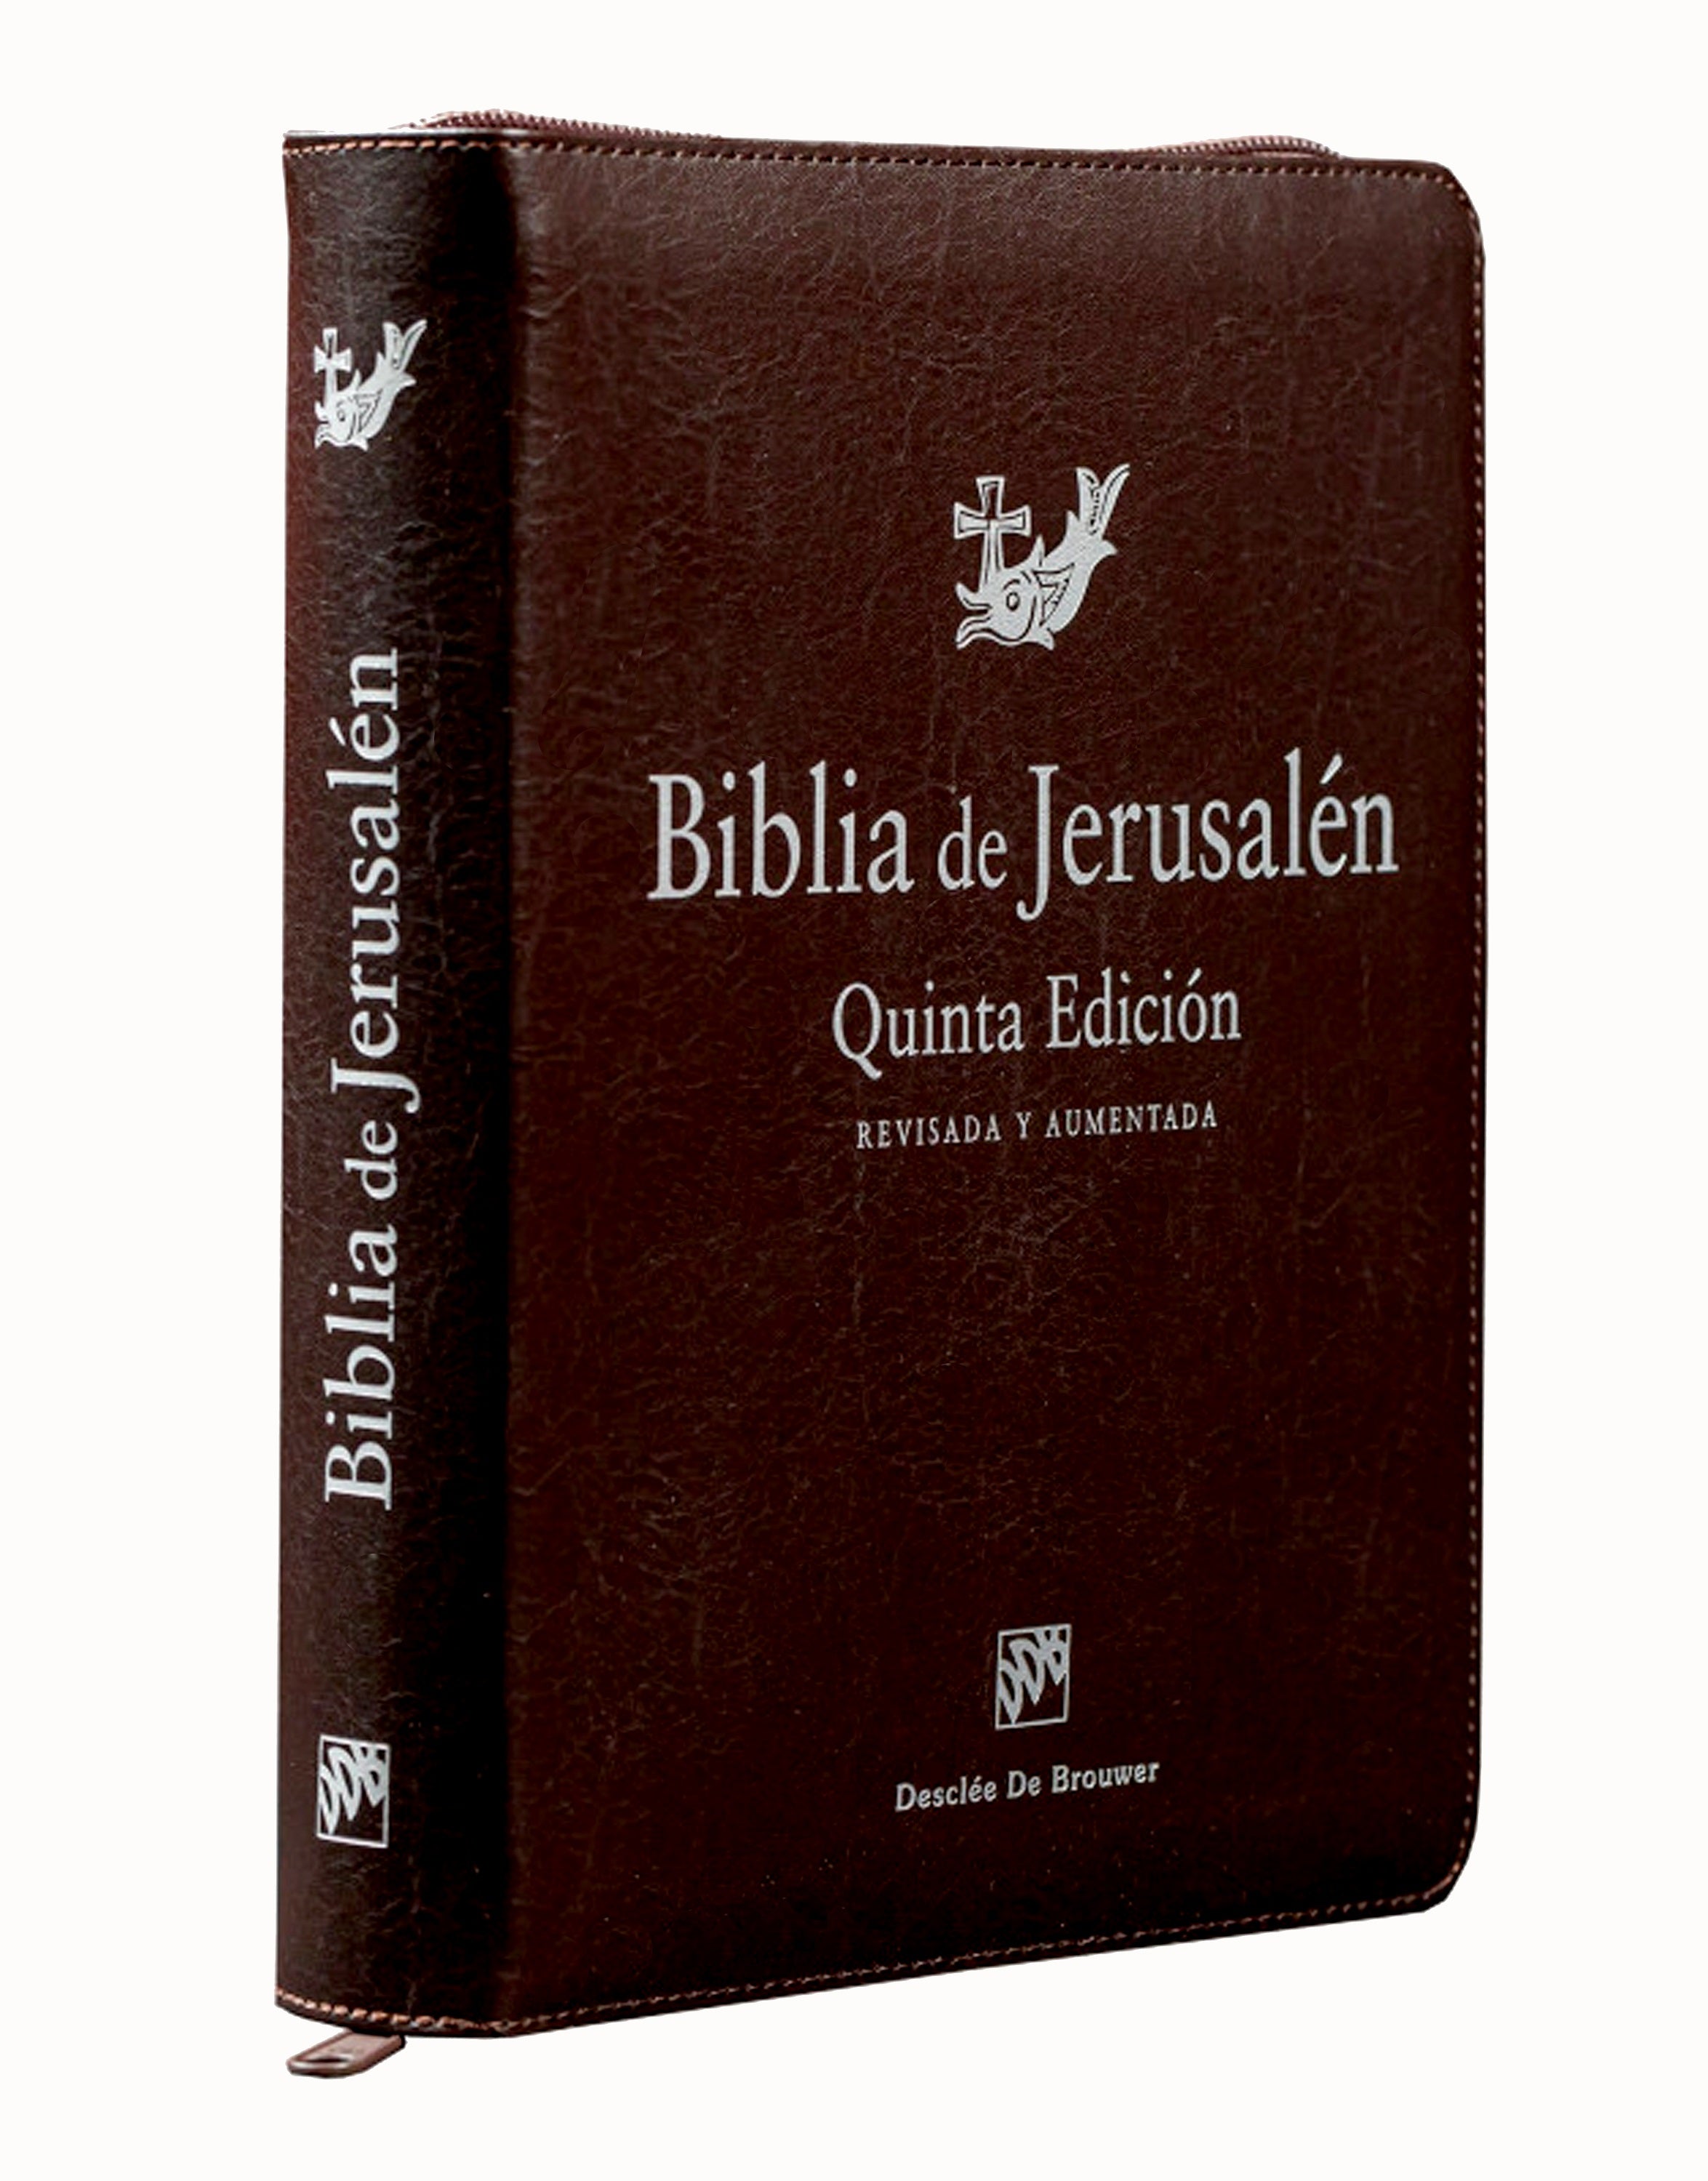 Biblia de Jerusalén Quinta Edición Revisada y Aumentada con cremallera